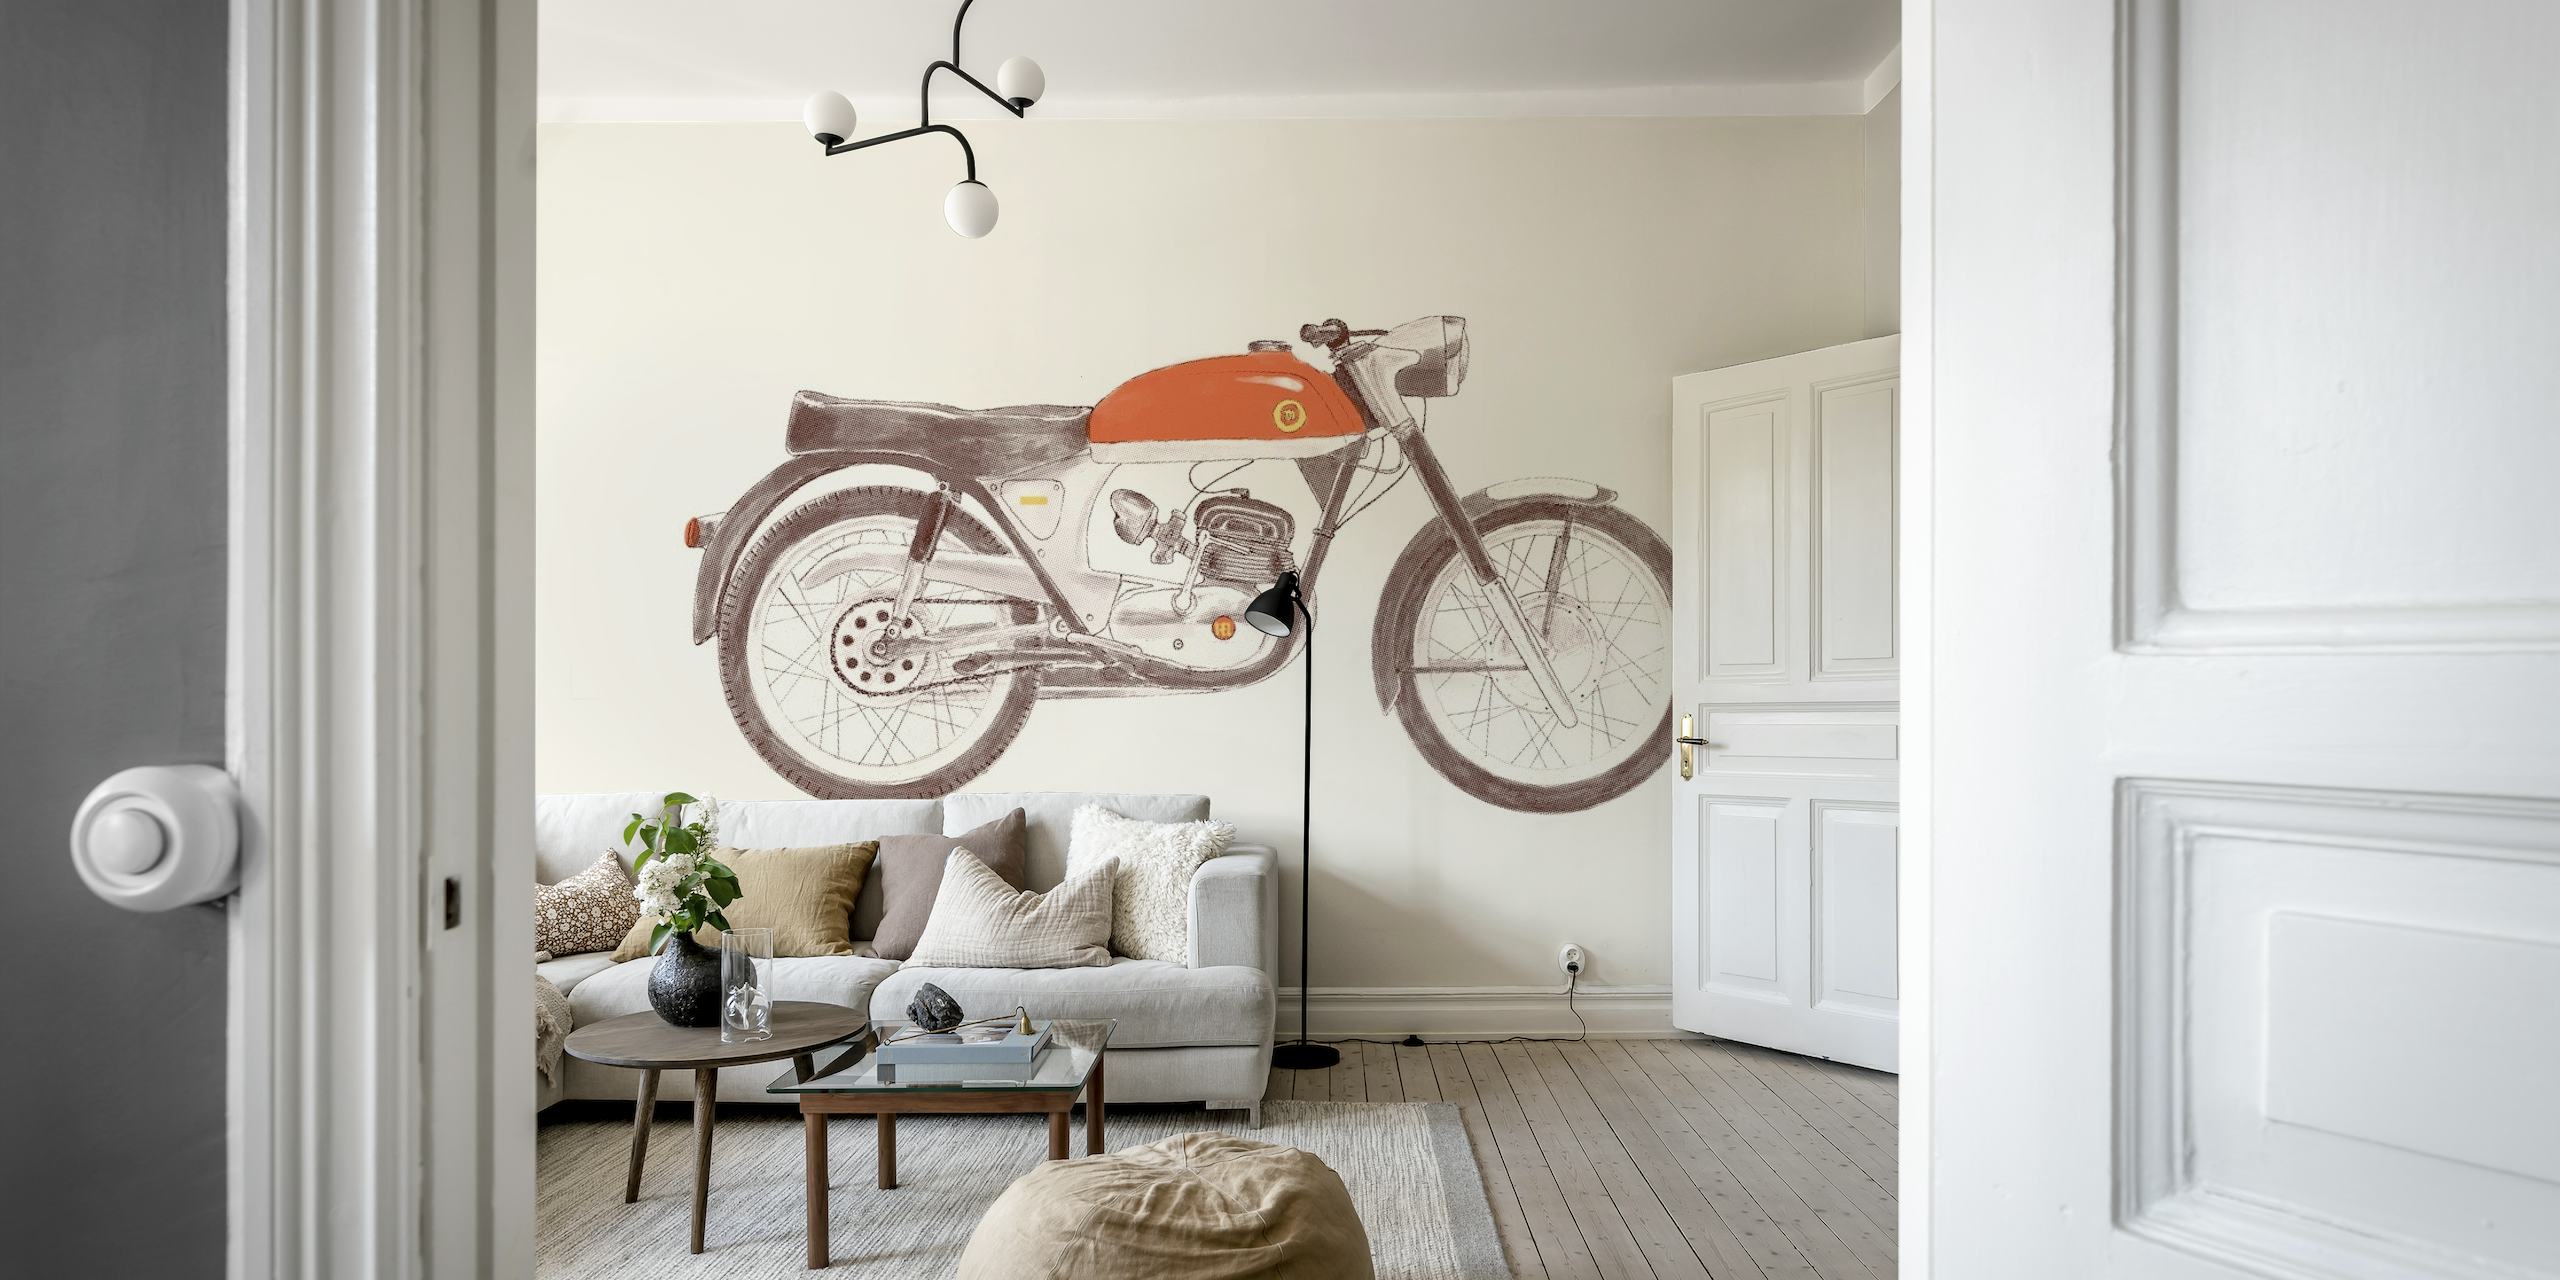 Fotomural vinílico de parede de motocicleta vintage em estilo de desenho artístico